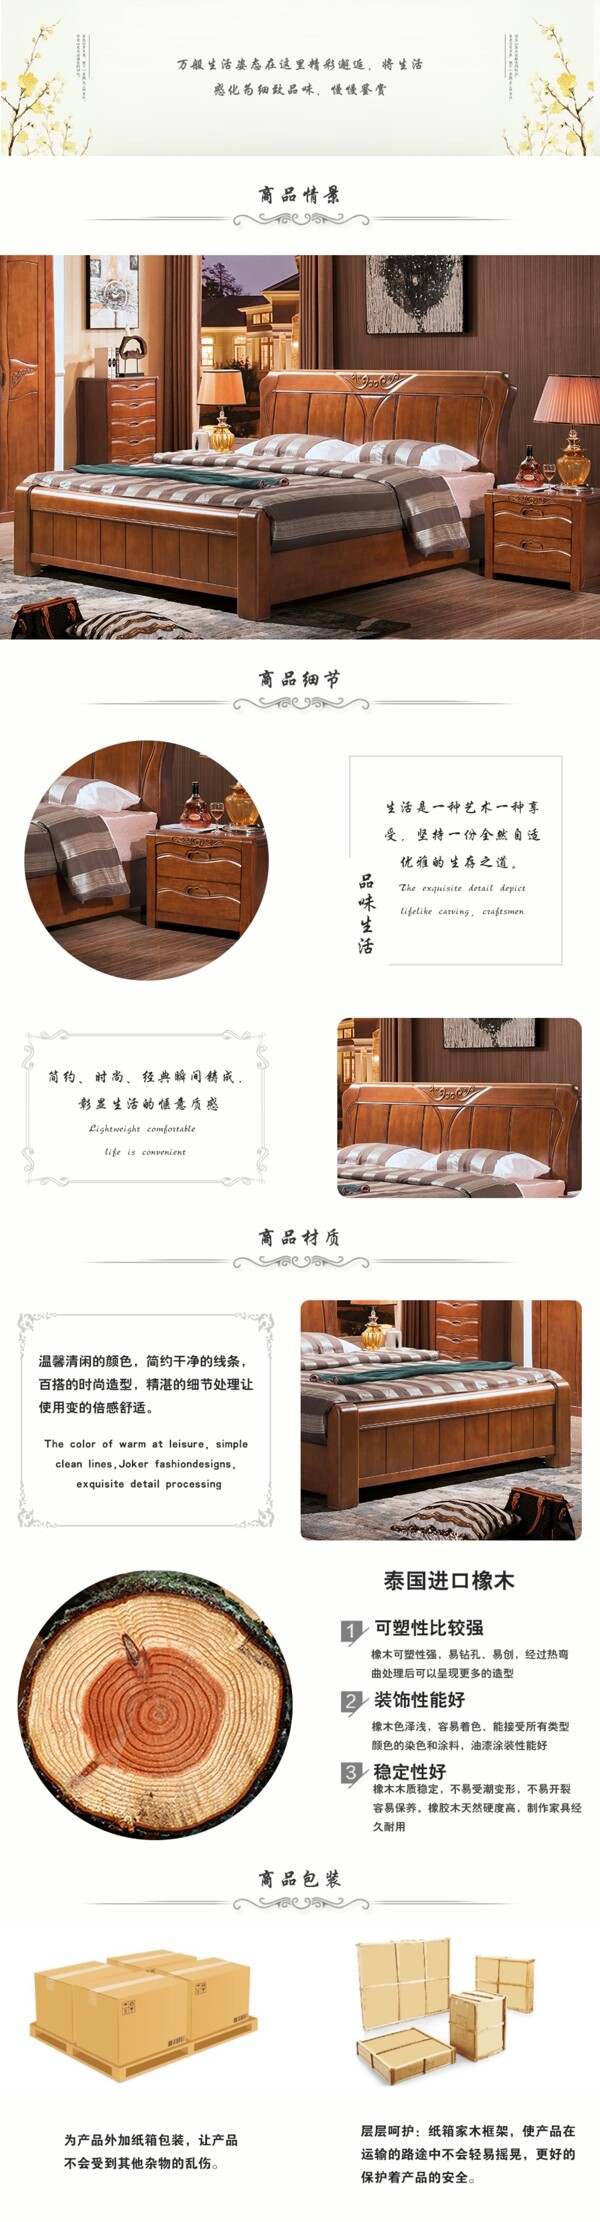 中式风格家具详情页